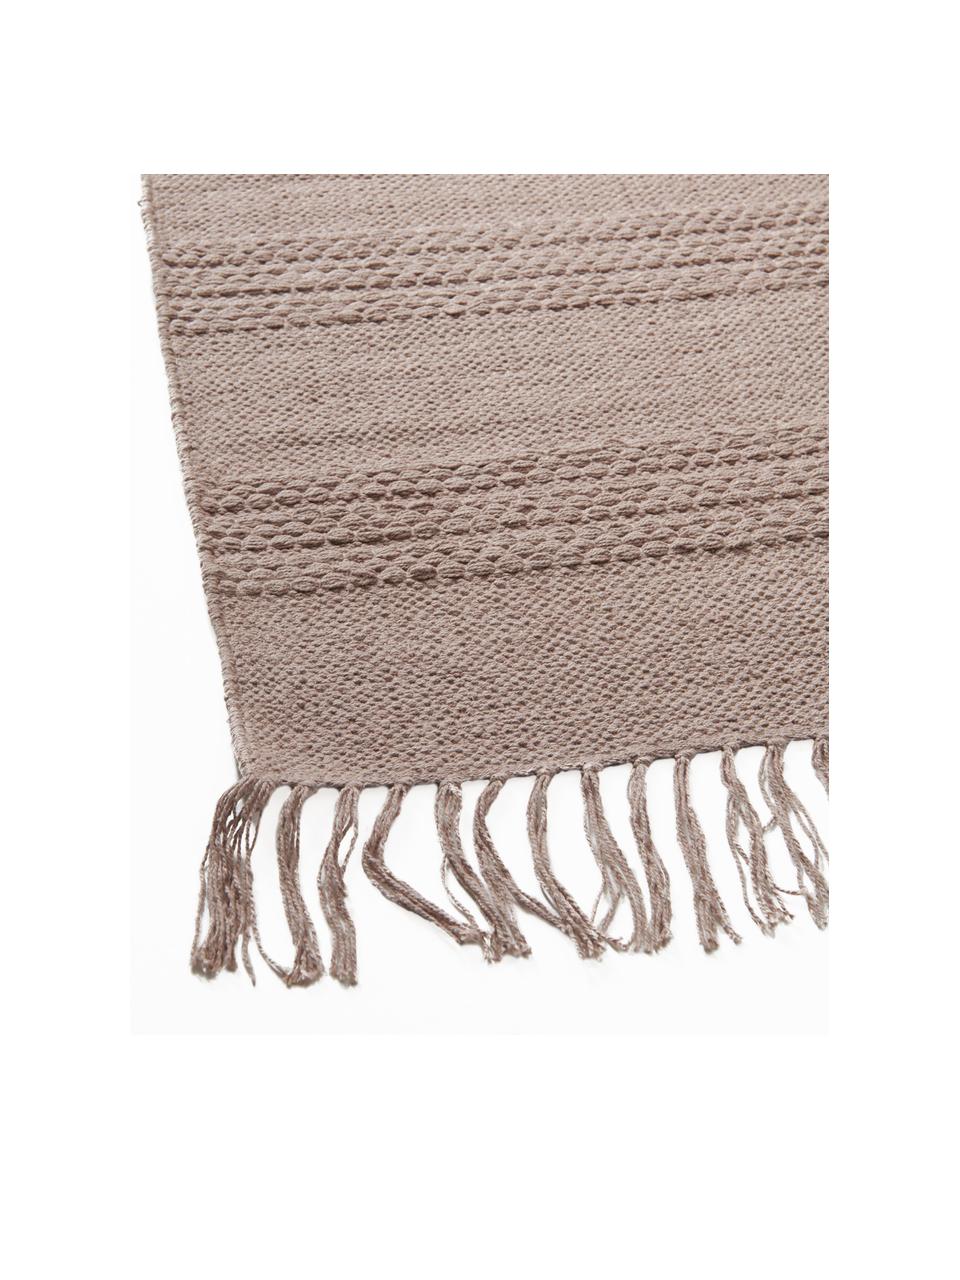 Dywan z bawełny z frędzlami Tanya, 100% bawełna, Taupe, S 160 x D 230 cm (Rozmiar M)